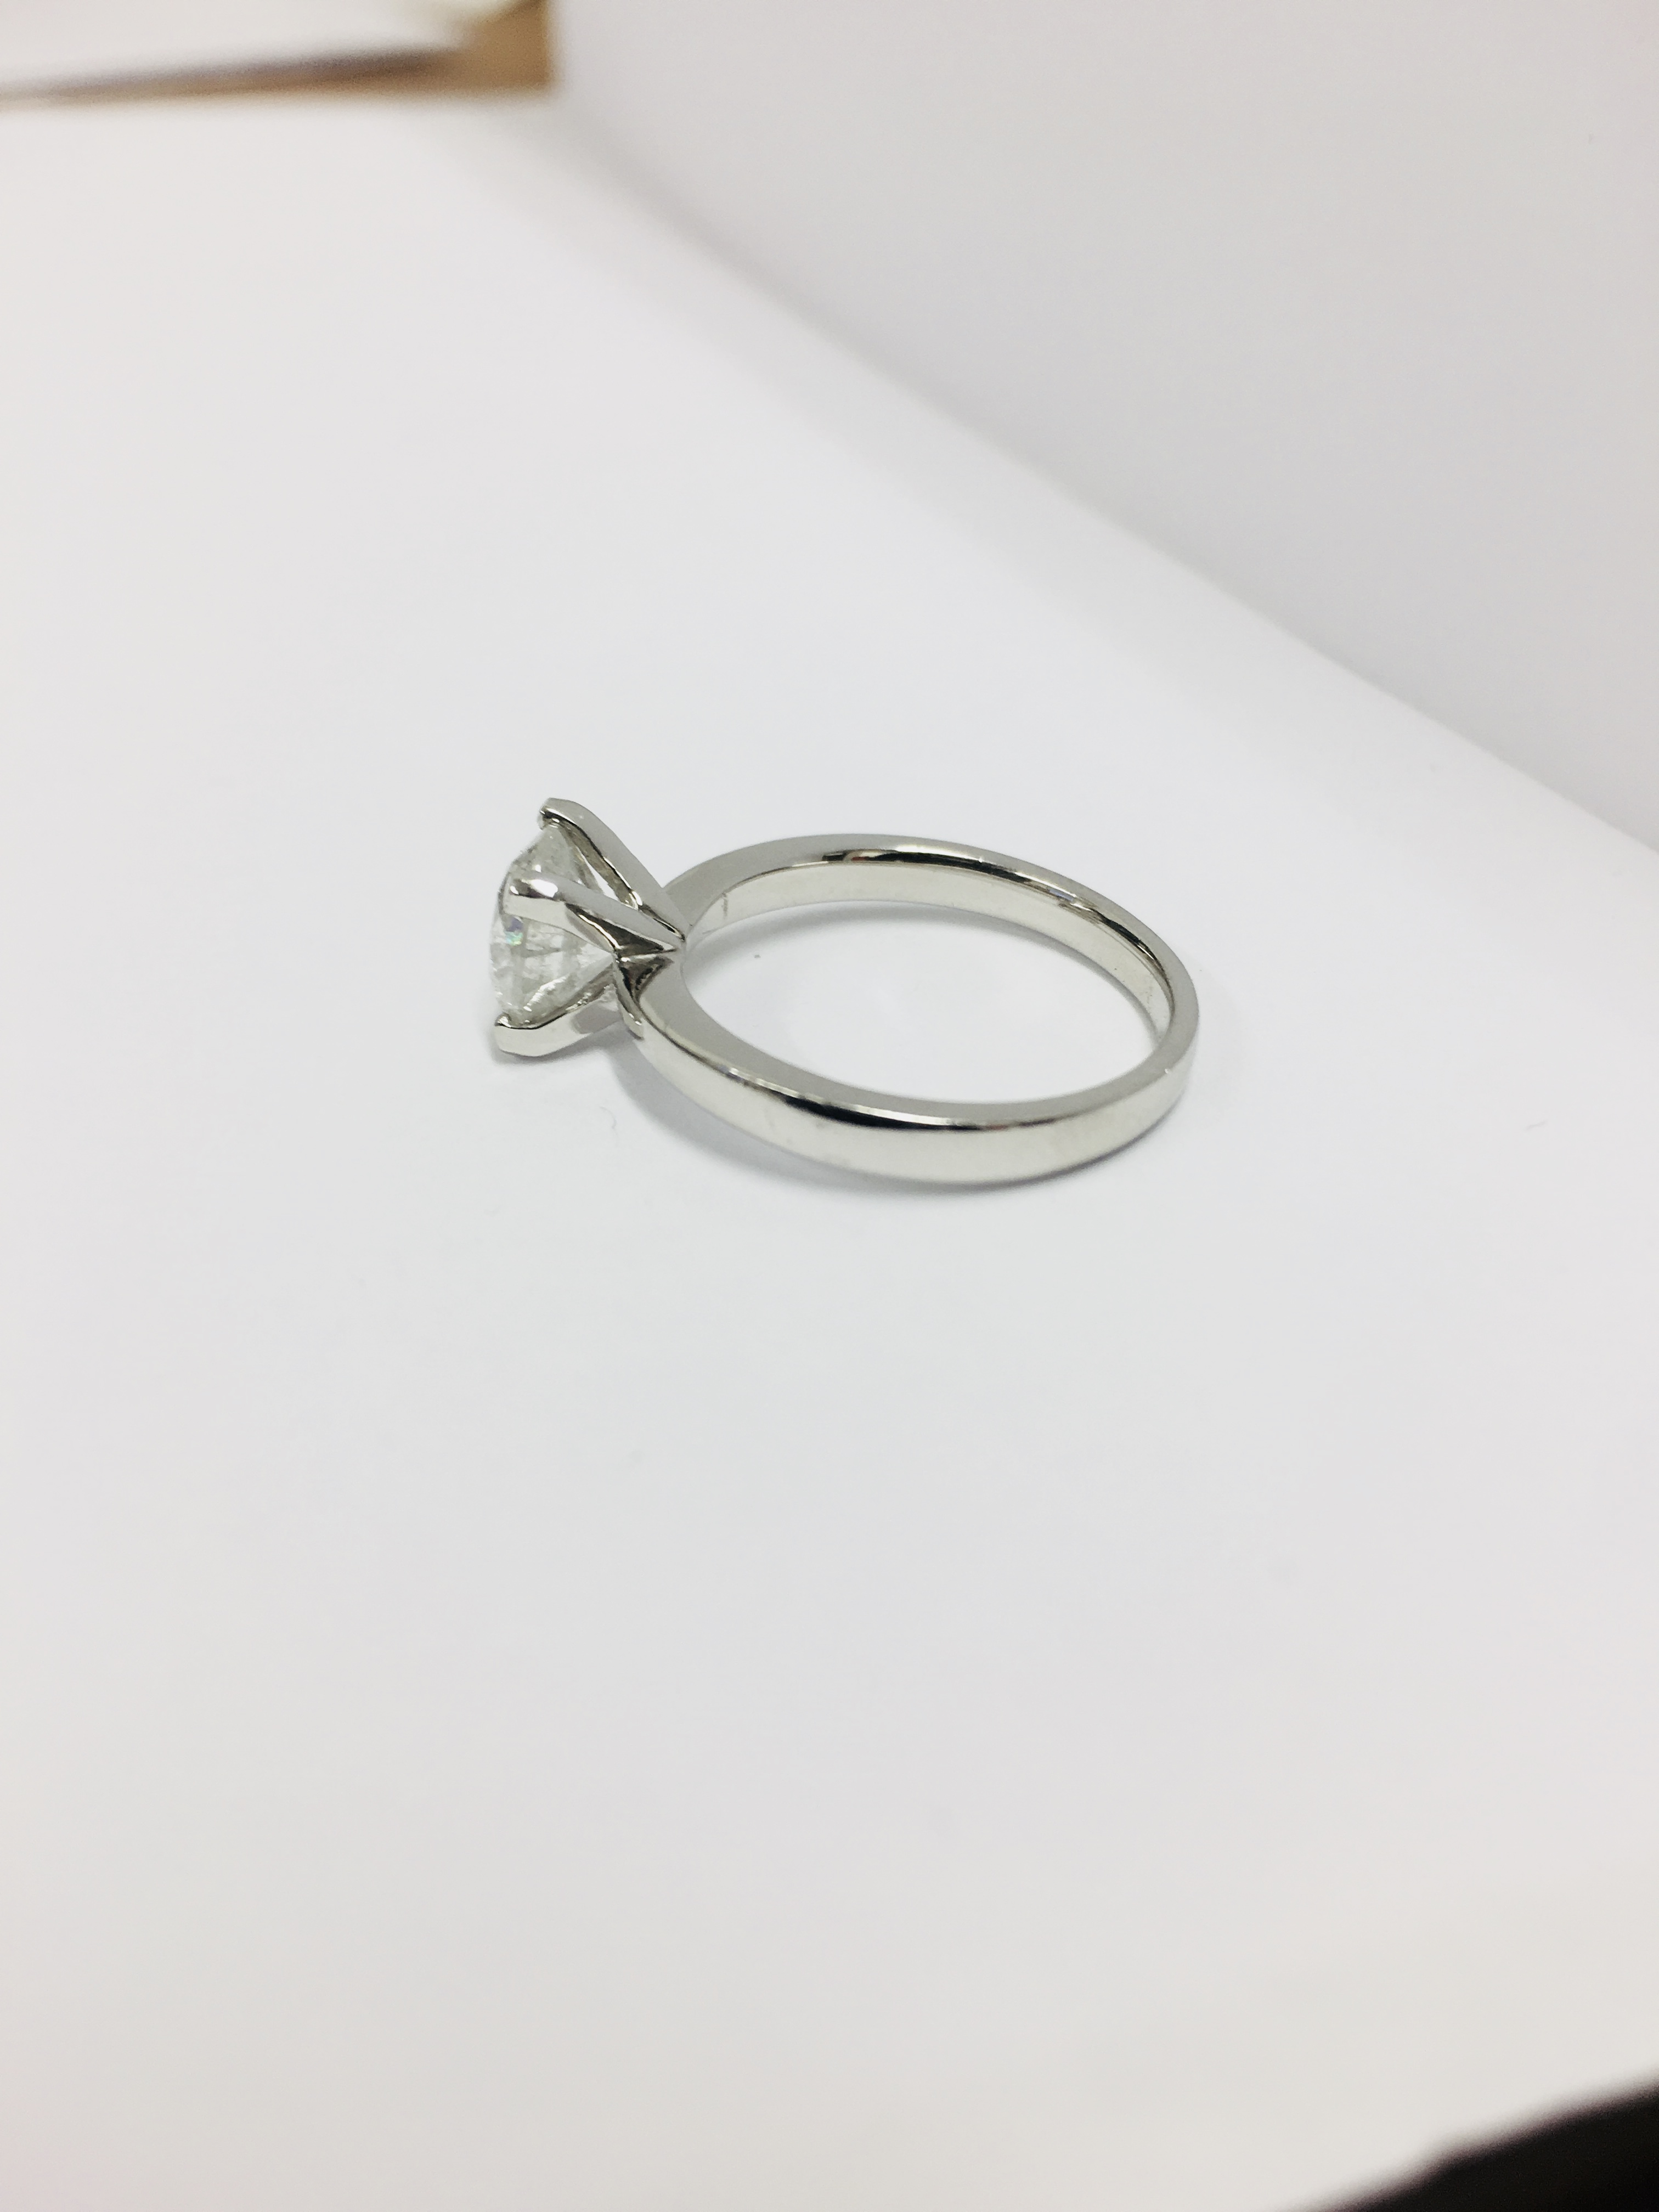 2.08ct diamond solitaire ring set in platinum - Image 4 of 6